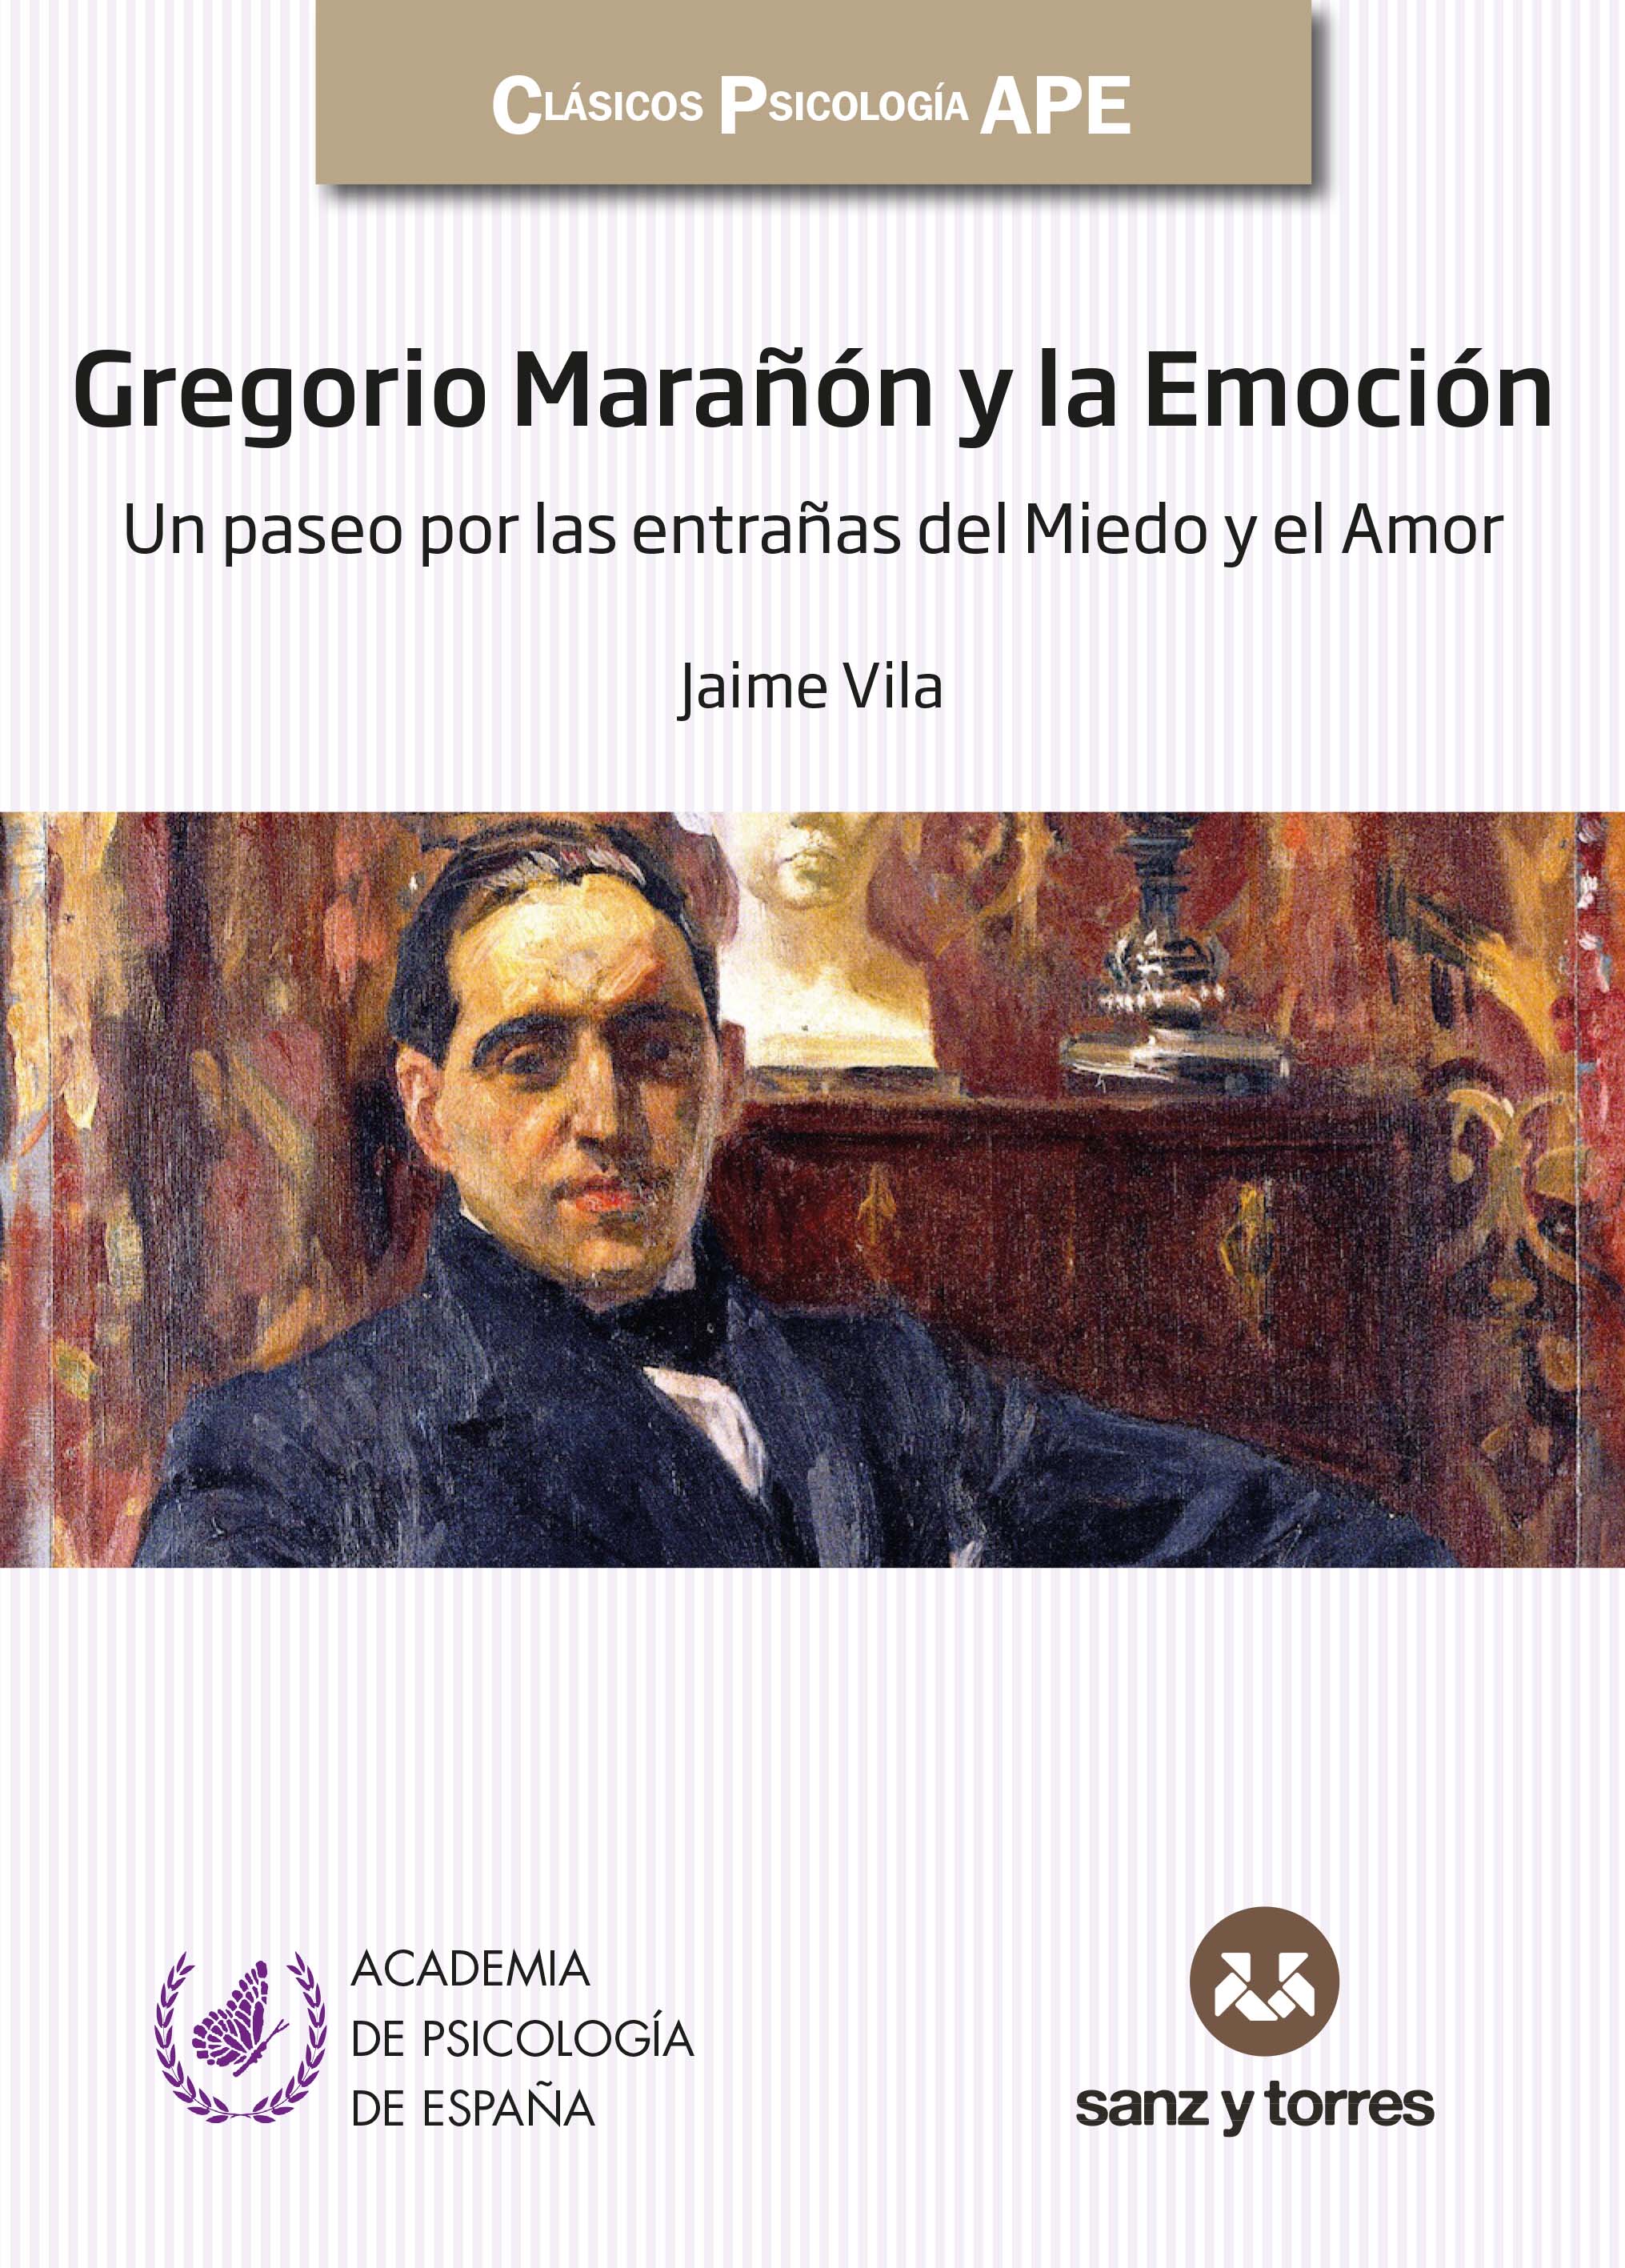 Gregorio Marañón y la Emoción
Un paseo por las entrañas del Miedo y el Amor